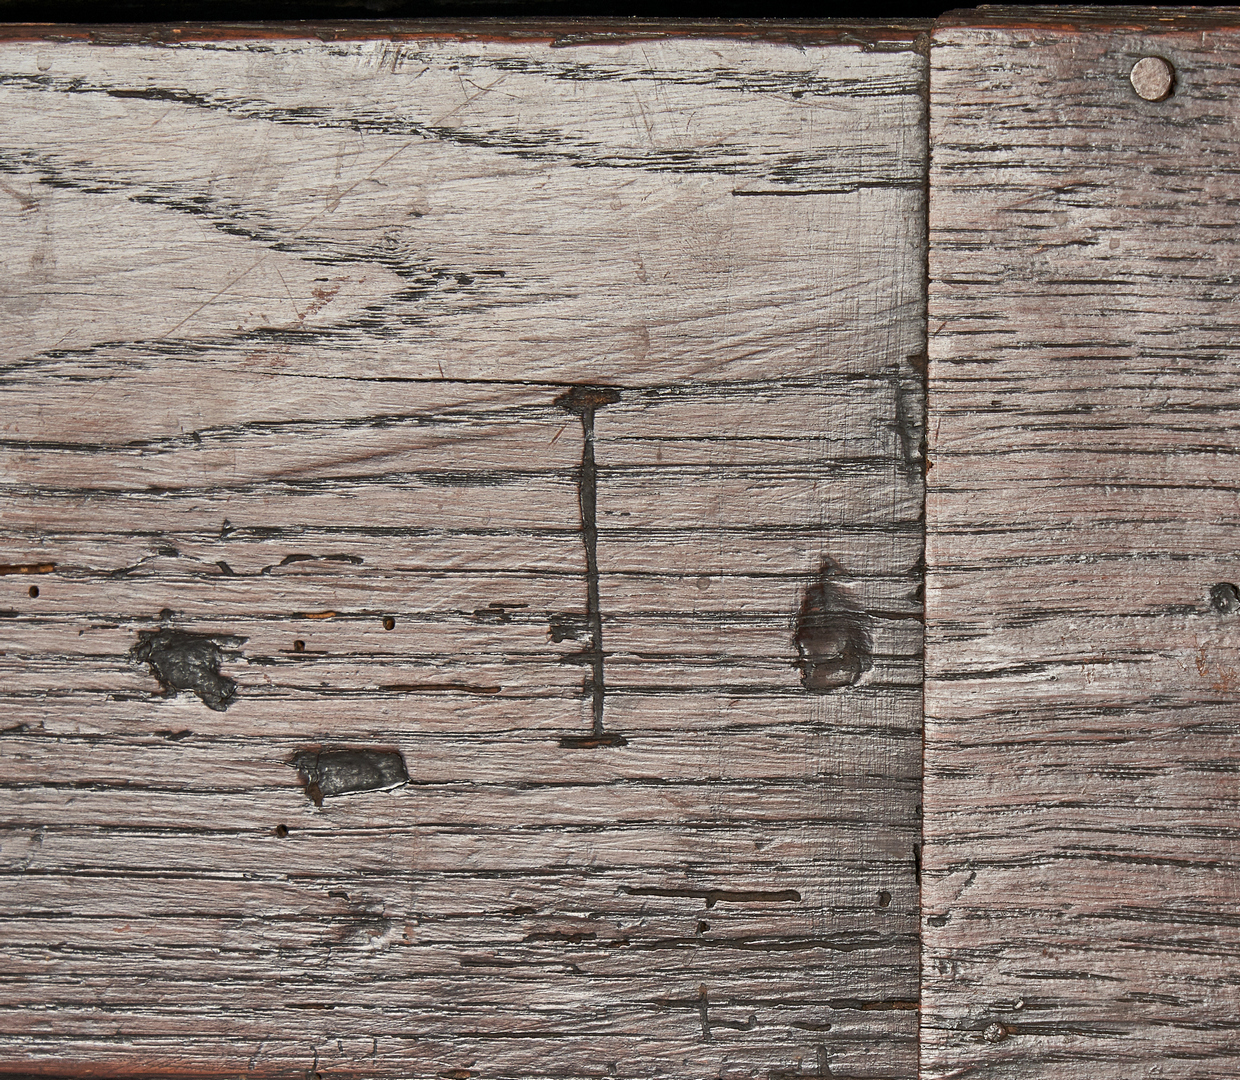 Lot 351: Early Oak Coffer with Linenfold Panels